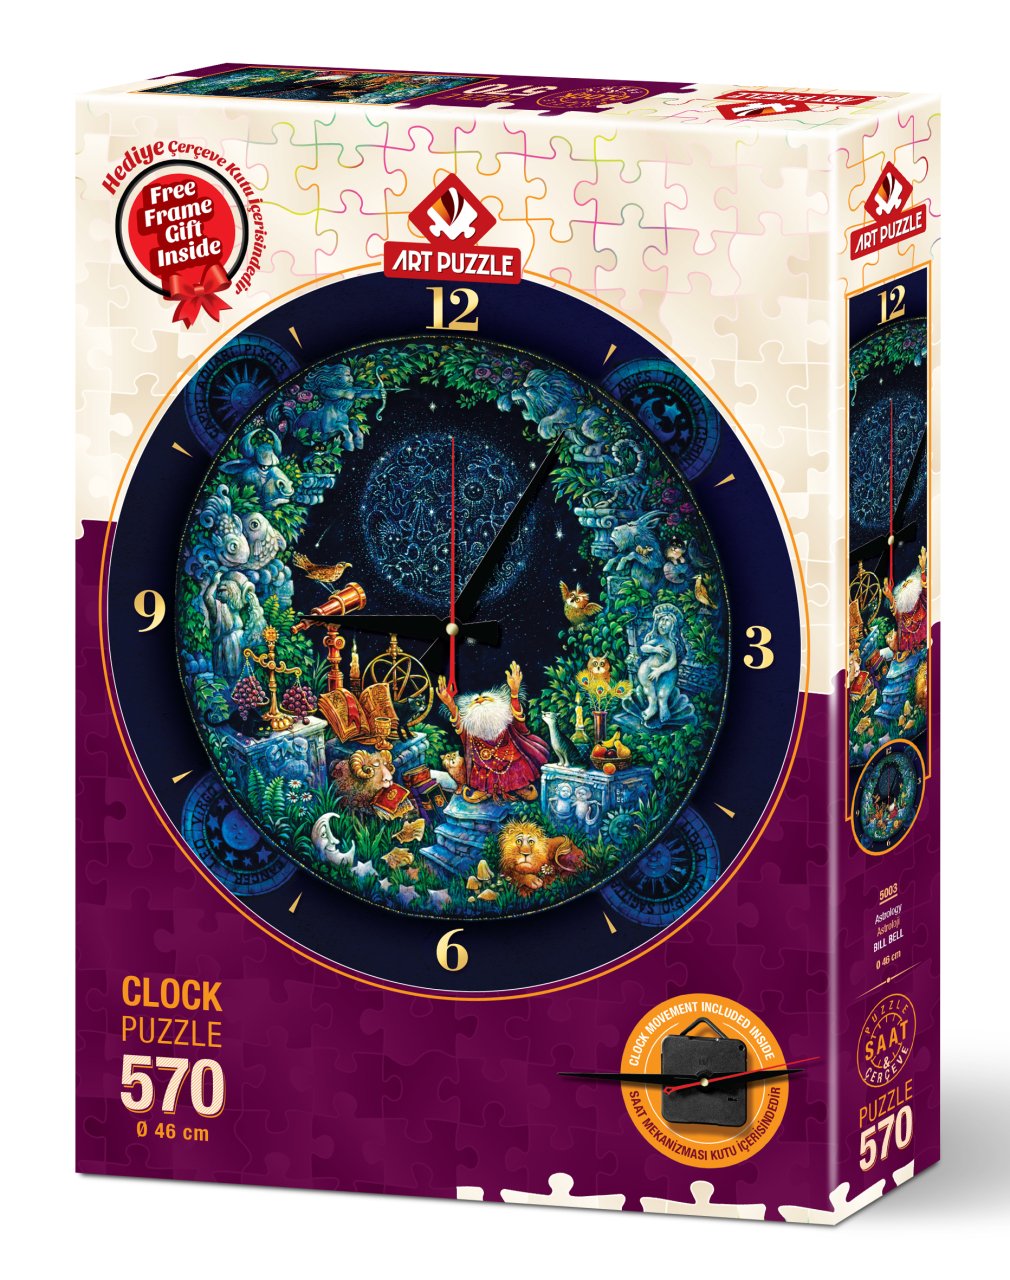 Art Puzzle Astrology 570 Piece Clock Puzzle